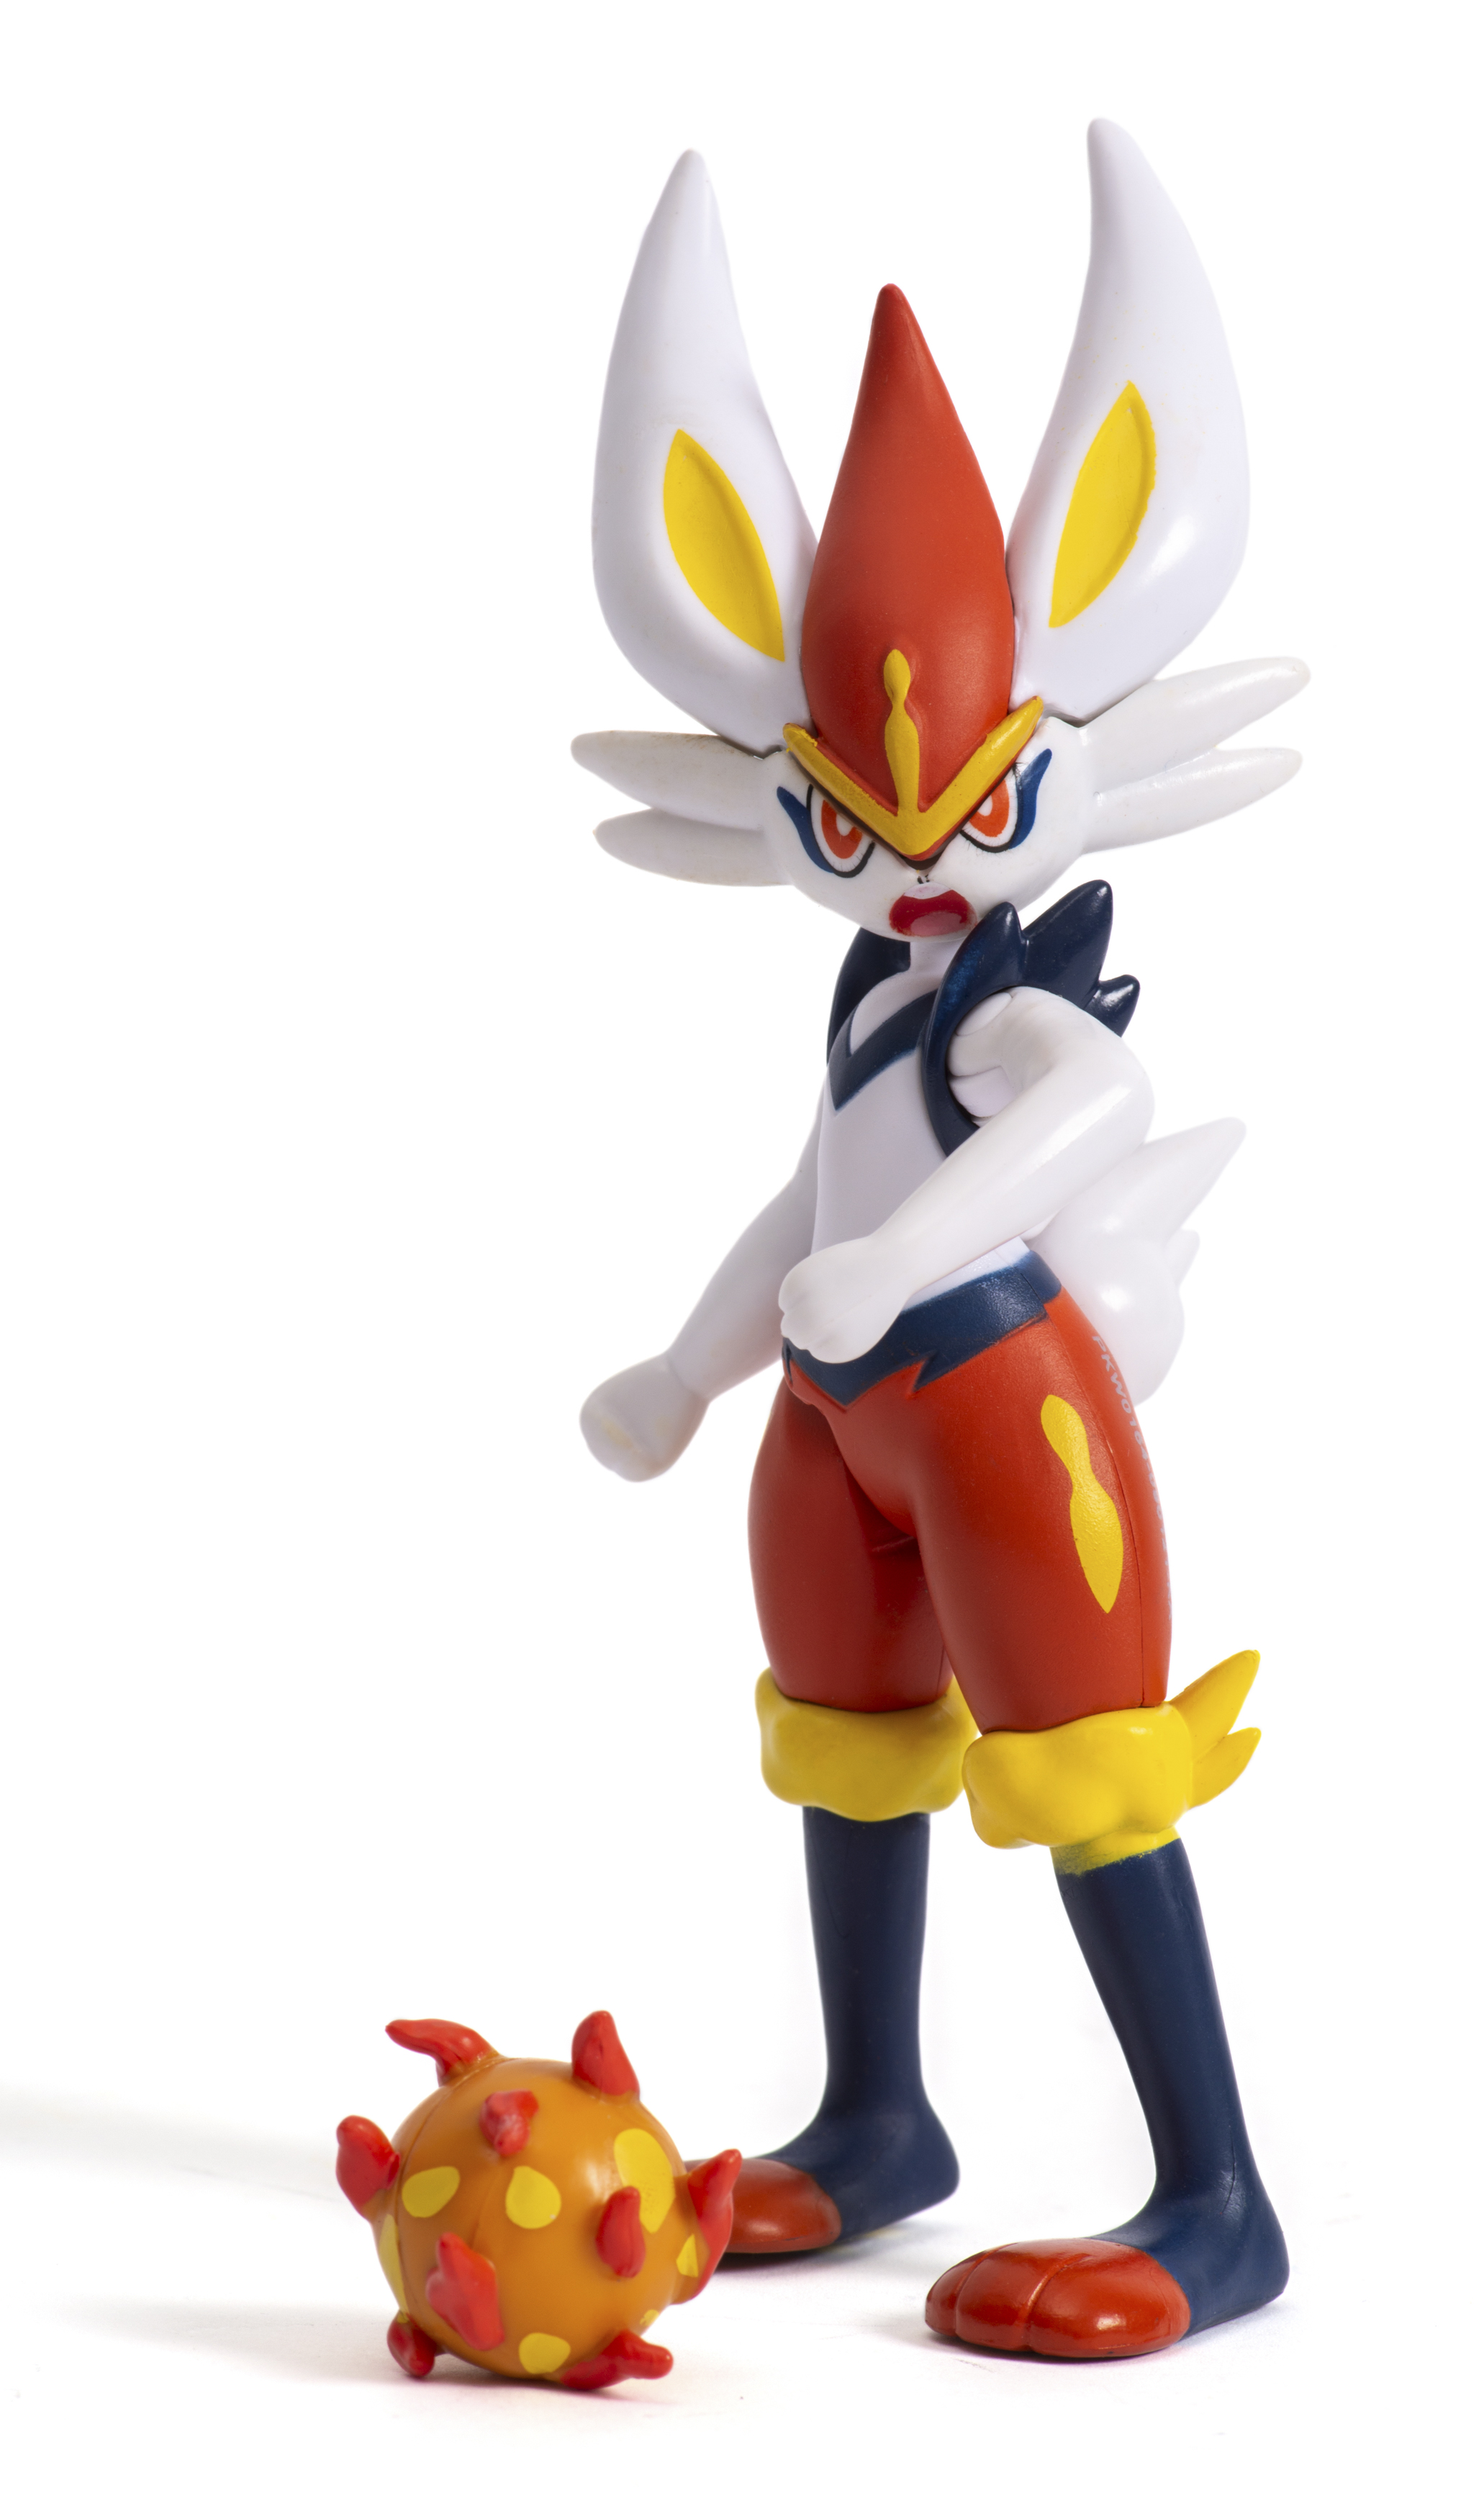 Liberlo Battle Pokémon - Figur Feature -